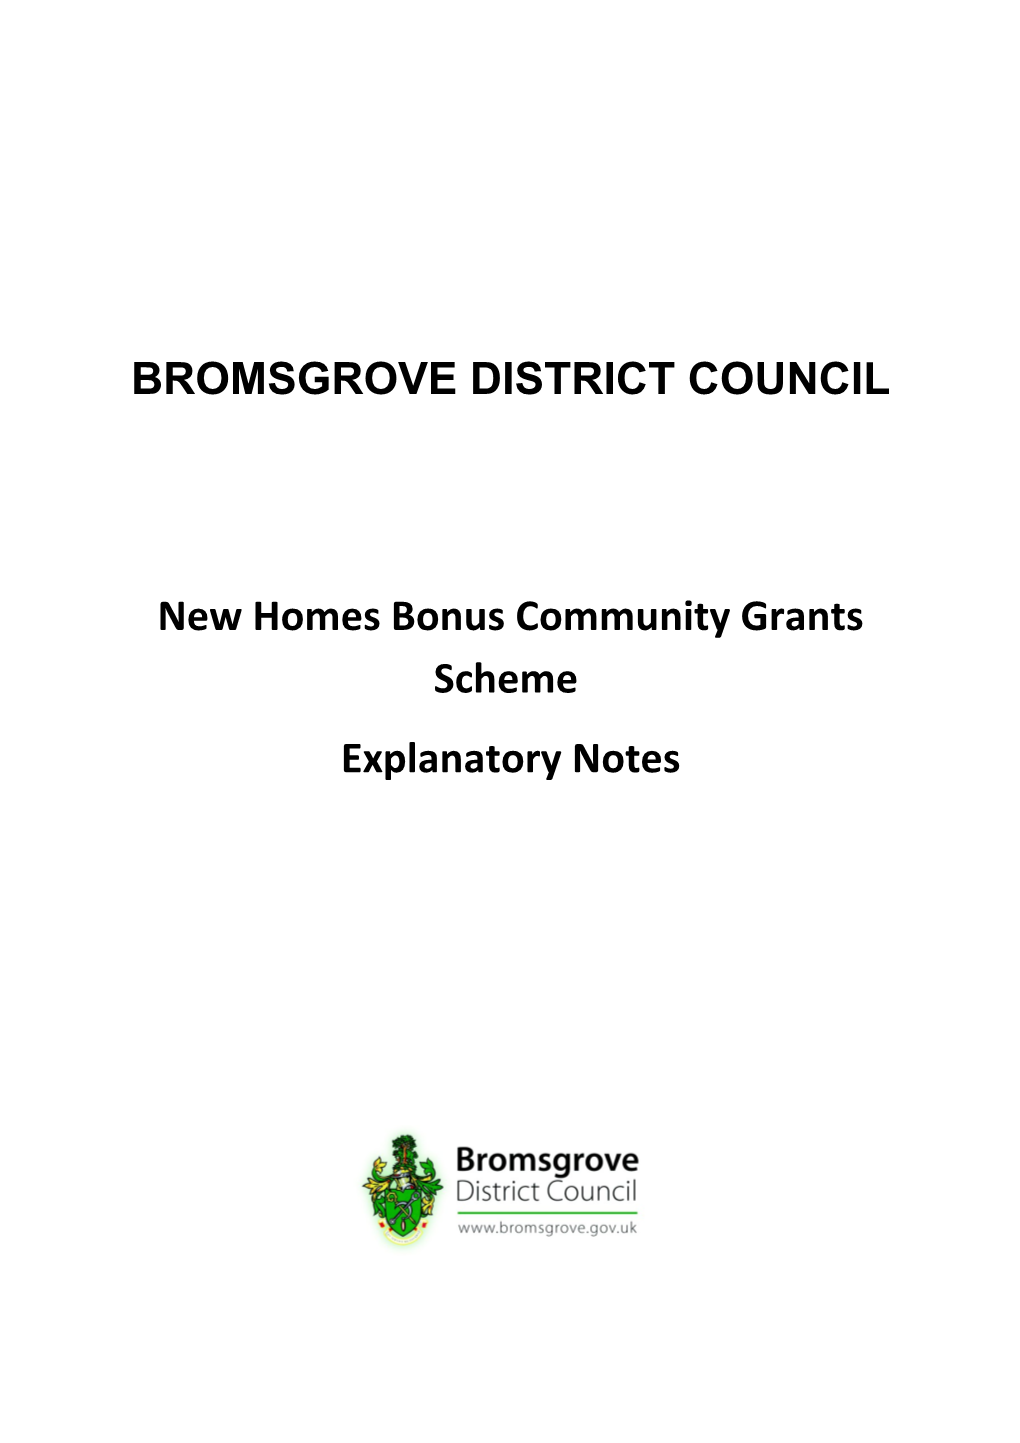 New Homes Bonus Community Grants Scheme